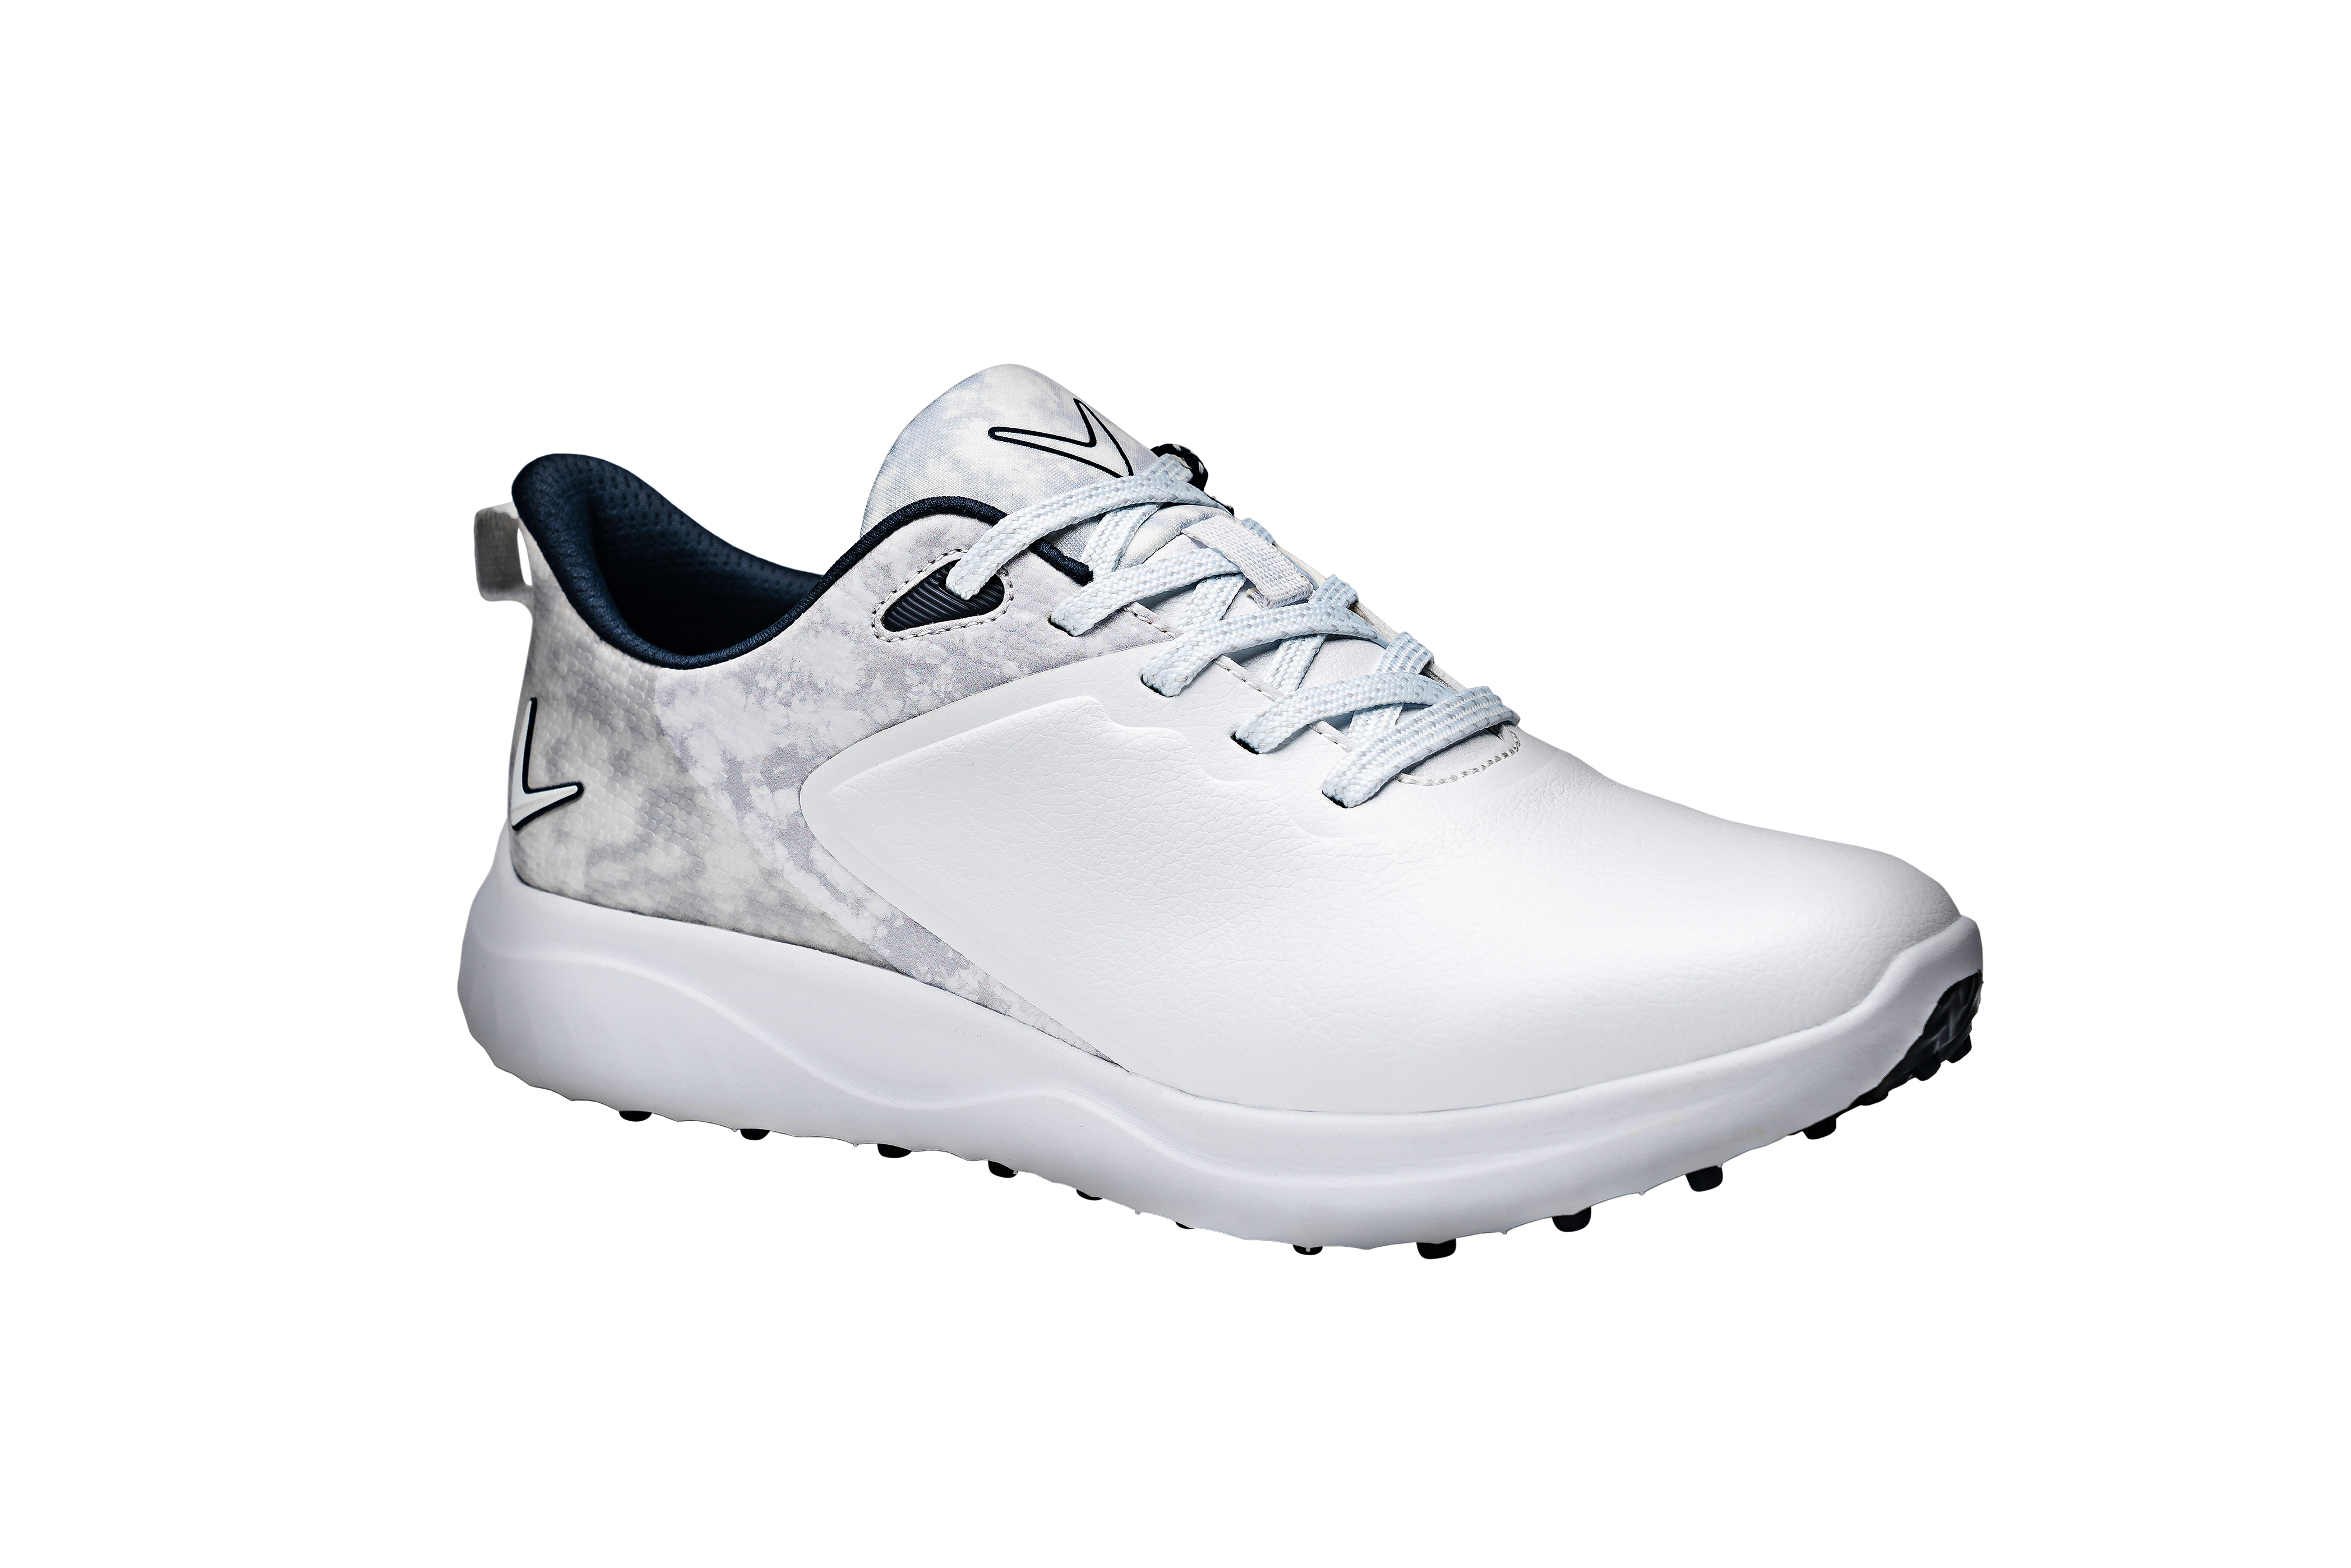 Callaway Anza dámské golfové boty, bílé/šedé, vel. 4,5 UK